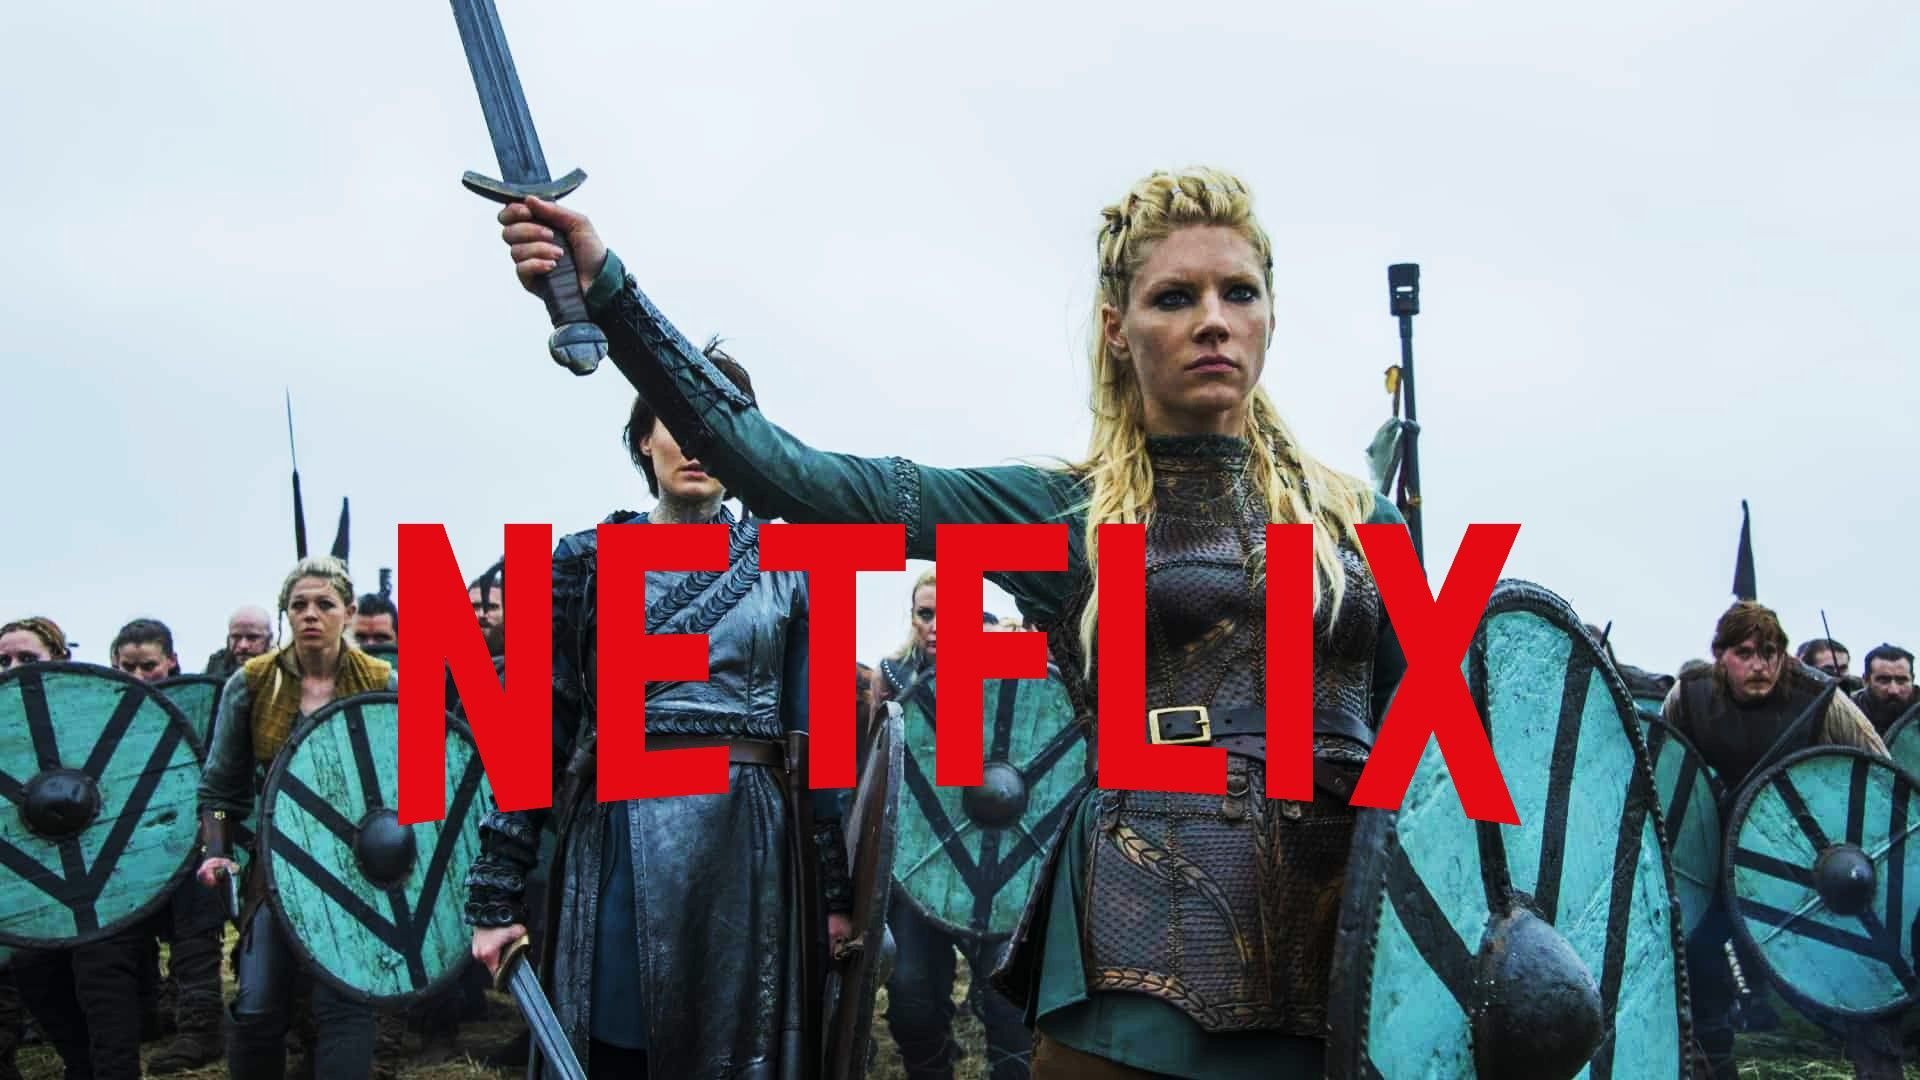 Vikings recibirá una secuela en Netflix titulada Vikings: Valhalla